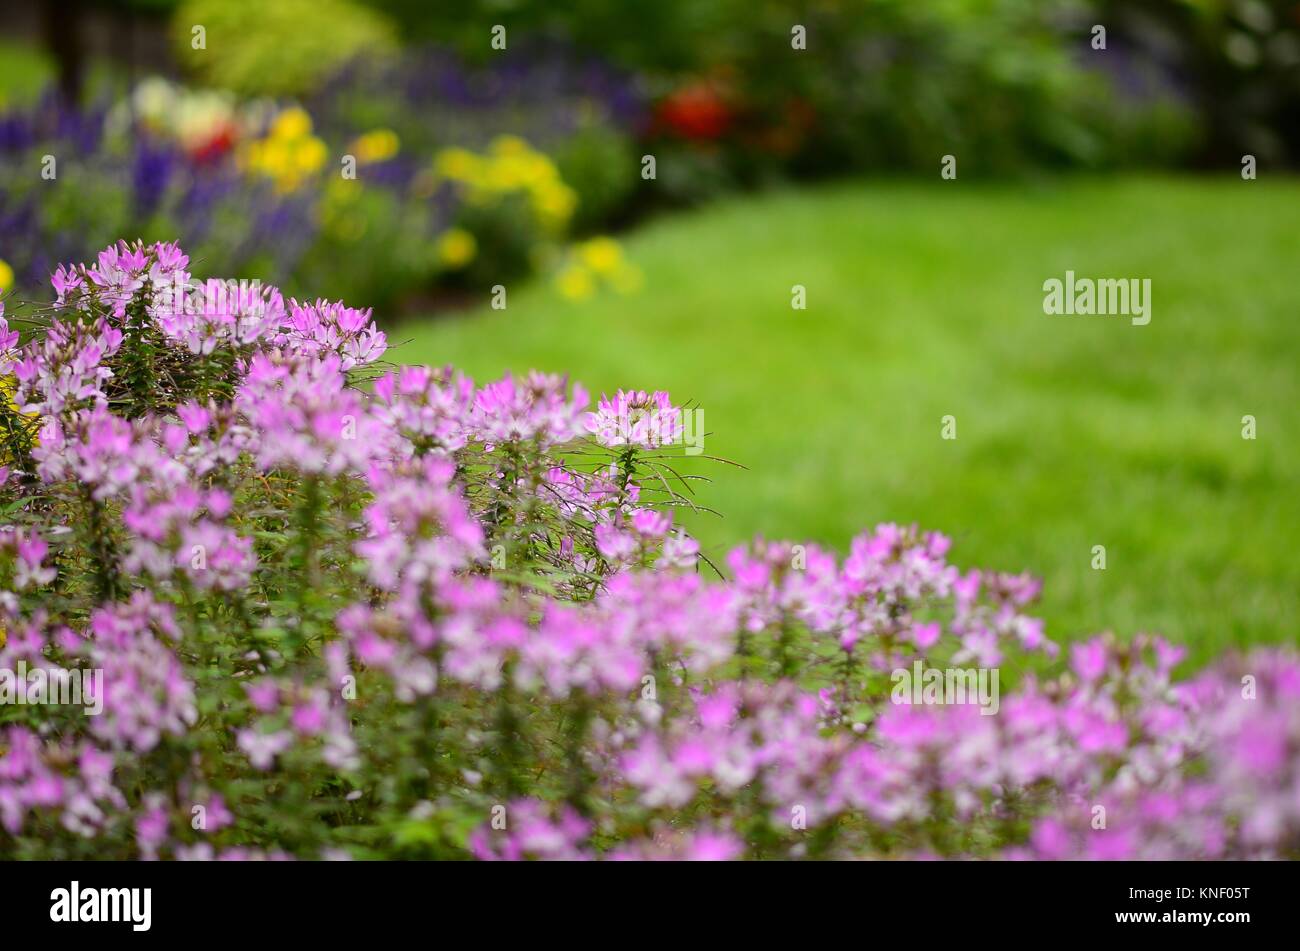 Cleome flores en muy soft focus destaca el jardín de flores, Pennsylvania, Estados Unidos. Foto de stock